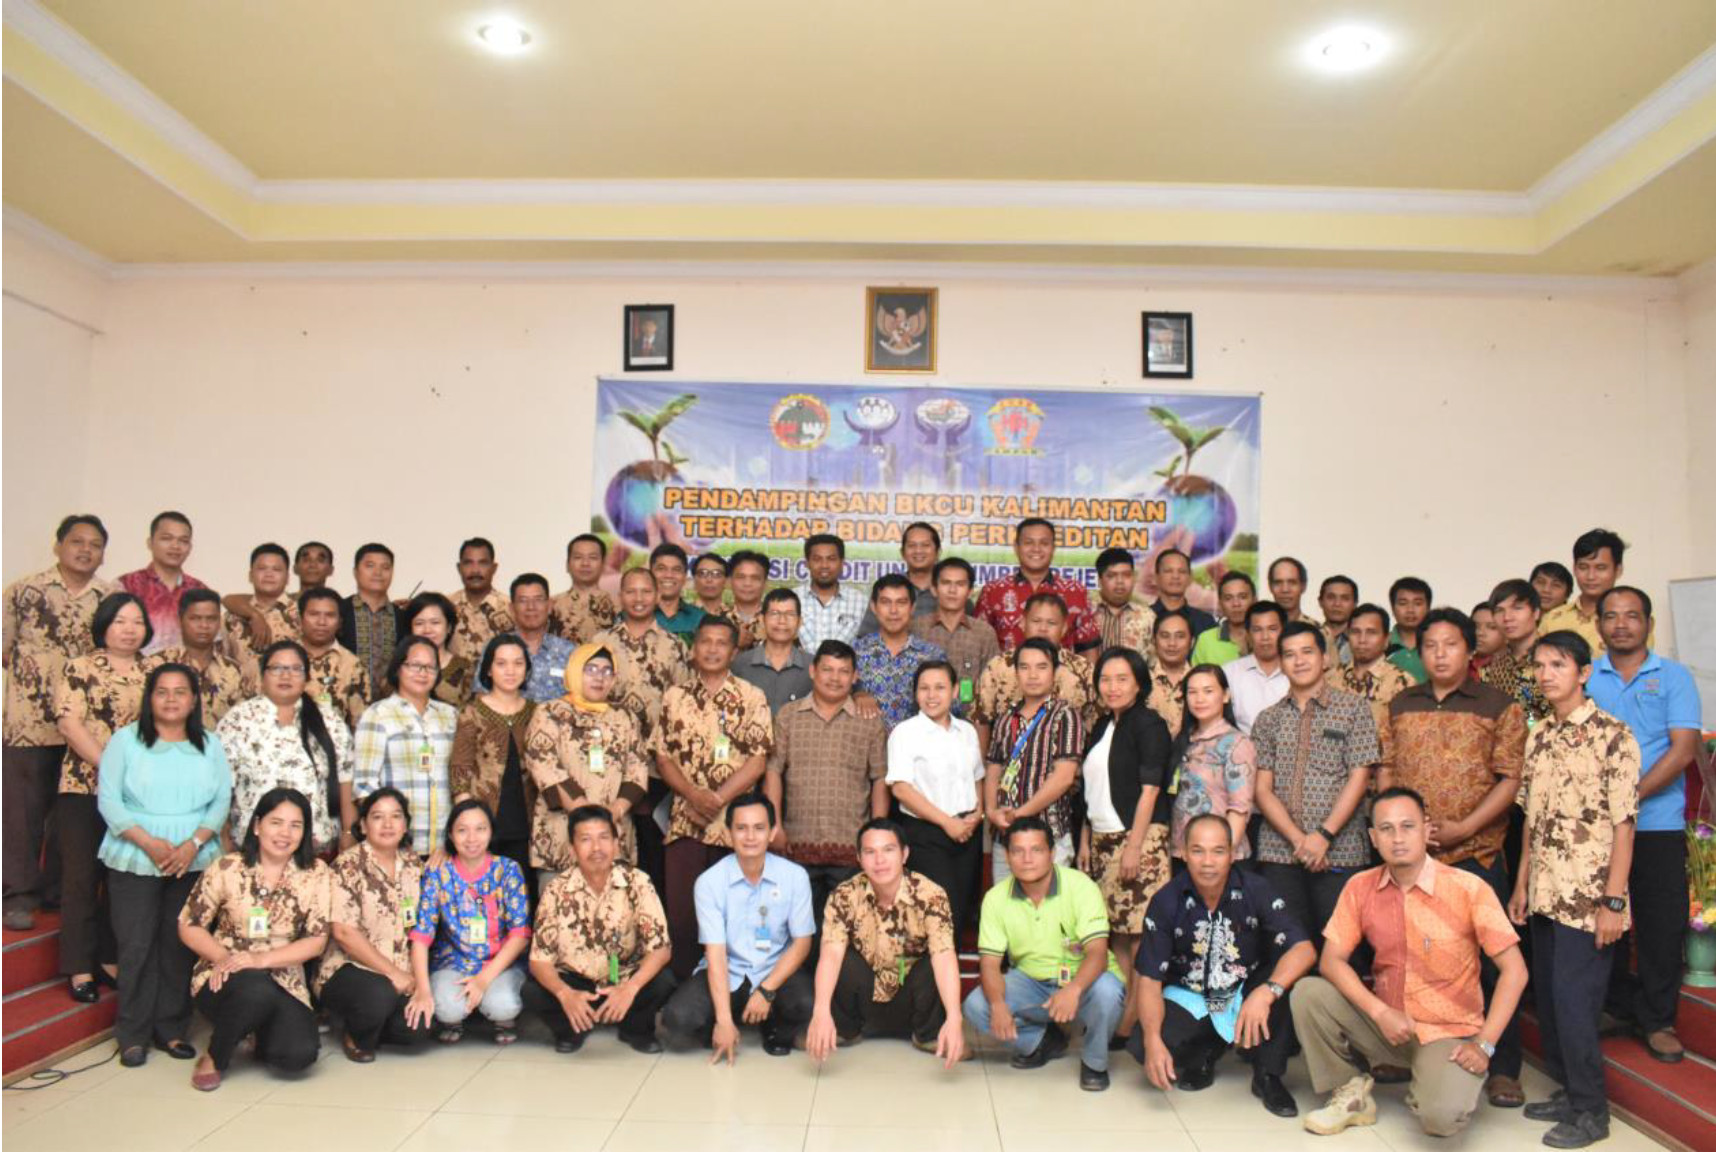 Bersama PUSKOPDIT BKCU Kalimantan, Koperasi Credit Union Sumber Rejeki semakin siap dalam bidang perkreditan